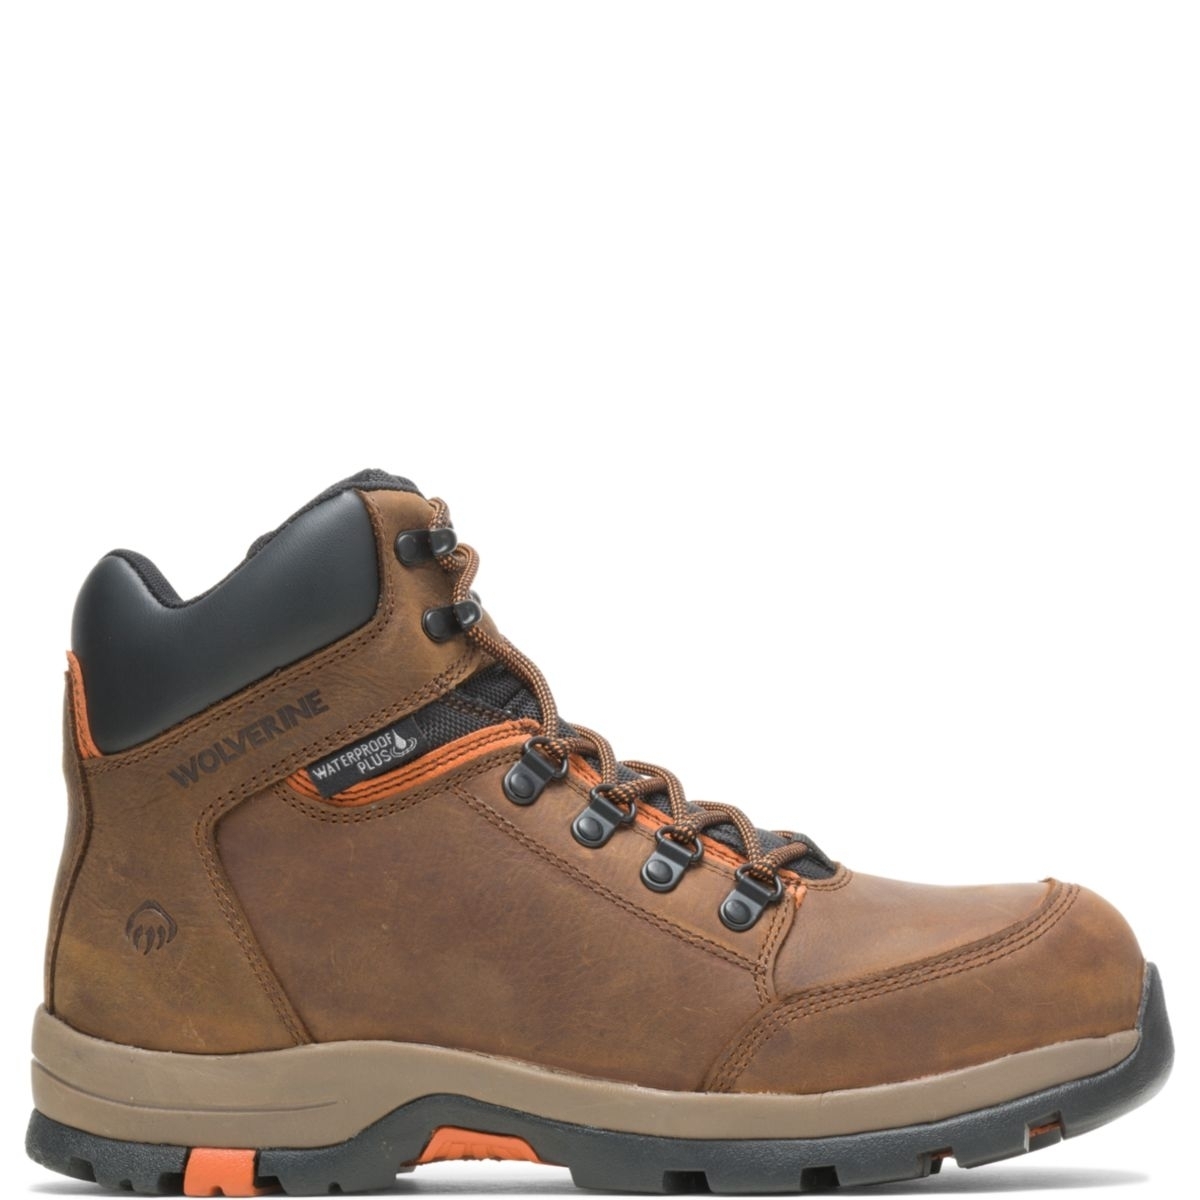 WOLVERINE Men's Grayson Steel Toe Waterproof Work Boot Brown - W211043 BROWN - BROWN, 14